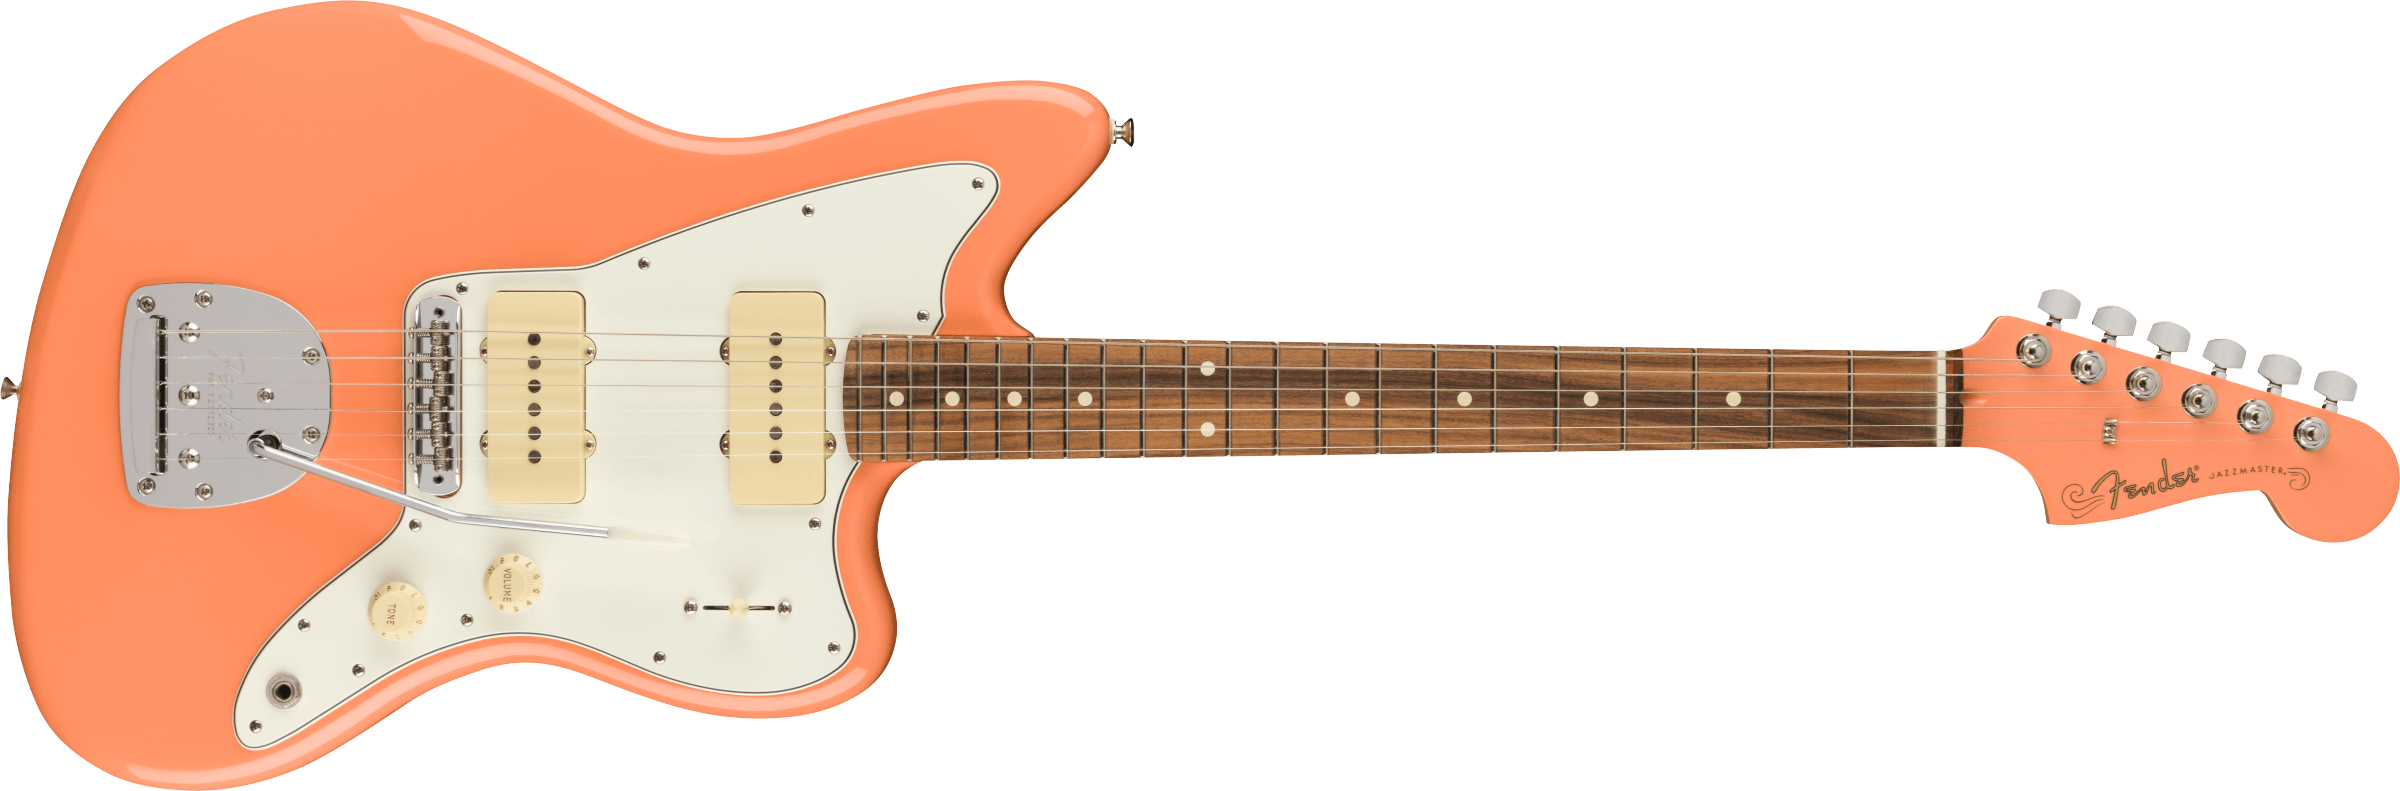 Fender Player Jazzmaster Ltd. Pacific Peach